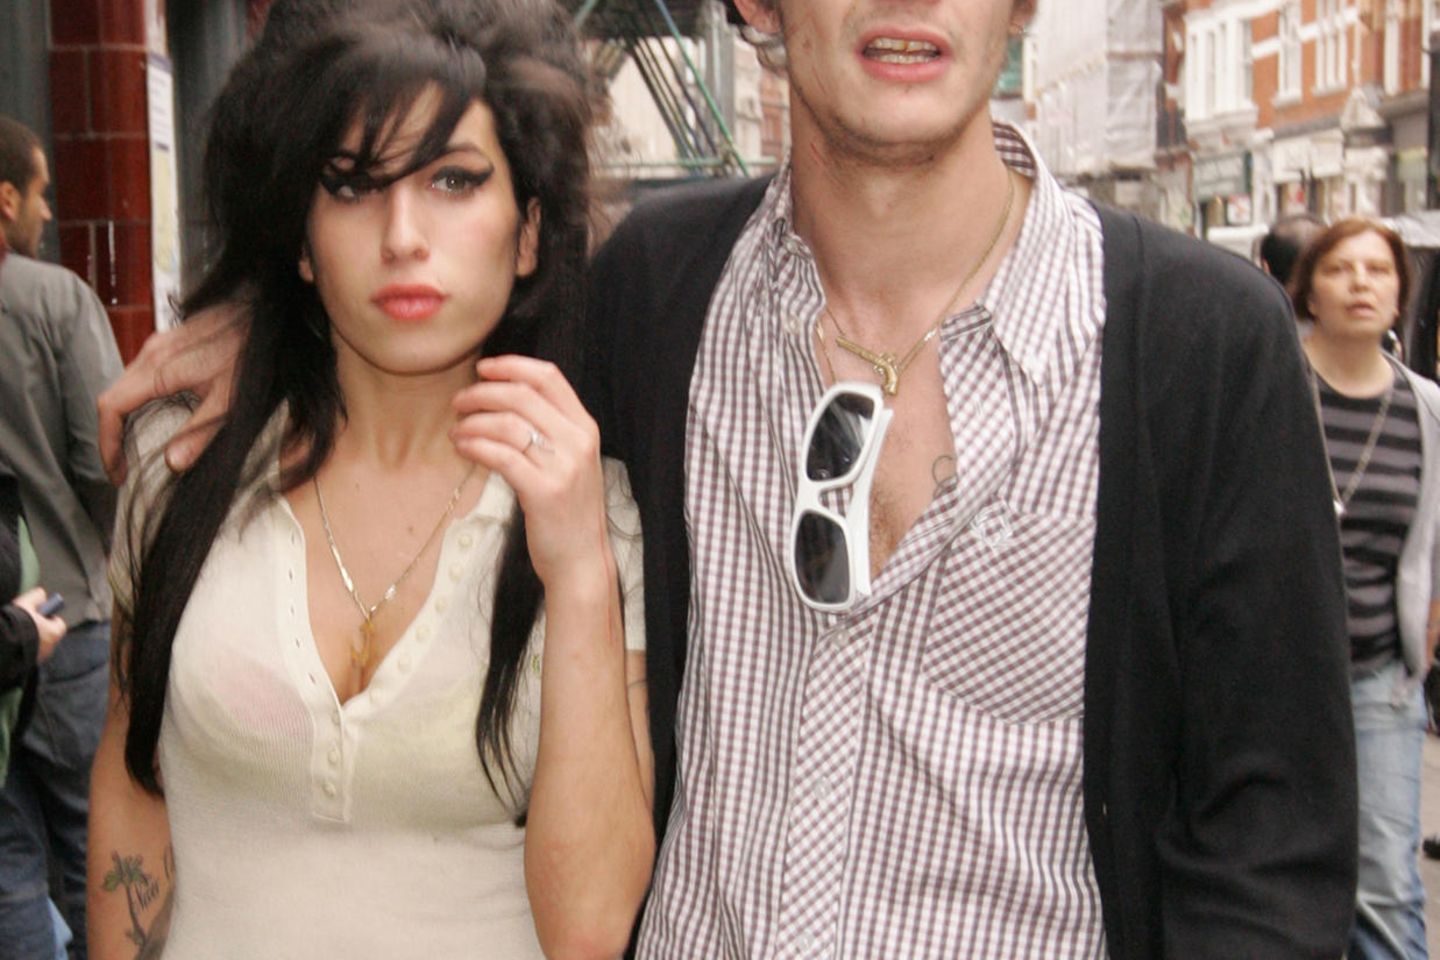 Blake Fielder Civil trauert noch immer um Amy Winehouse